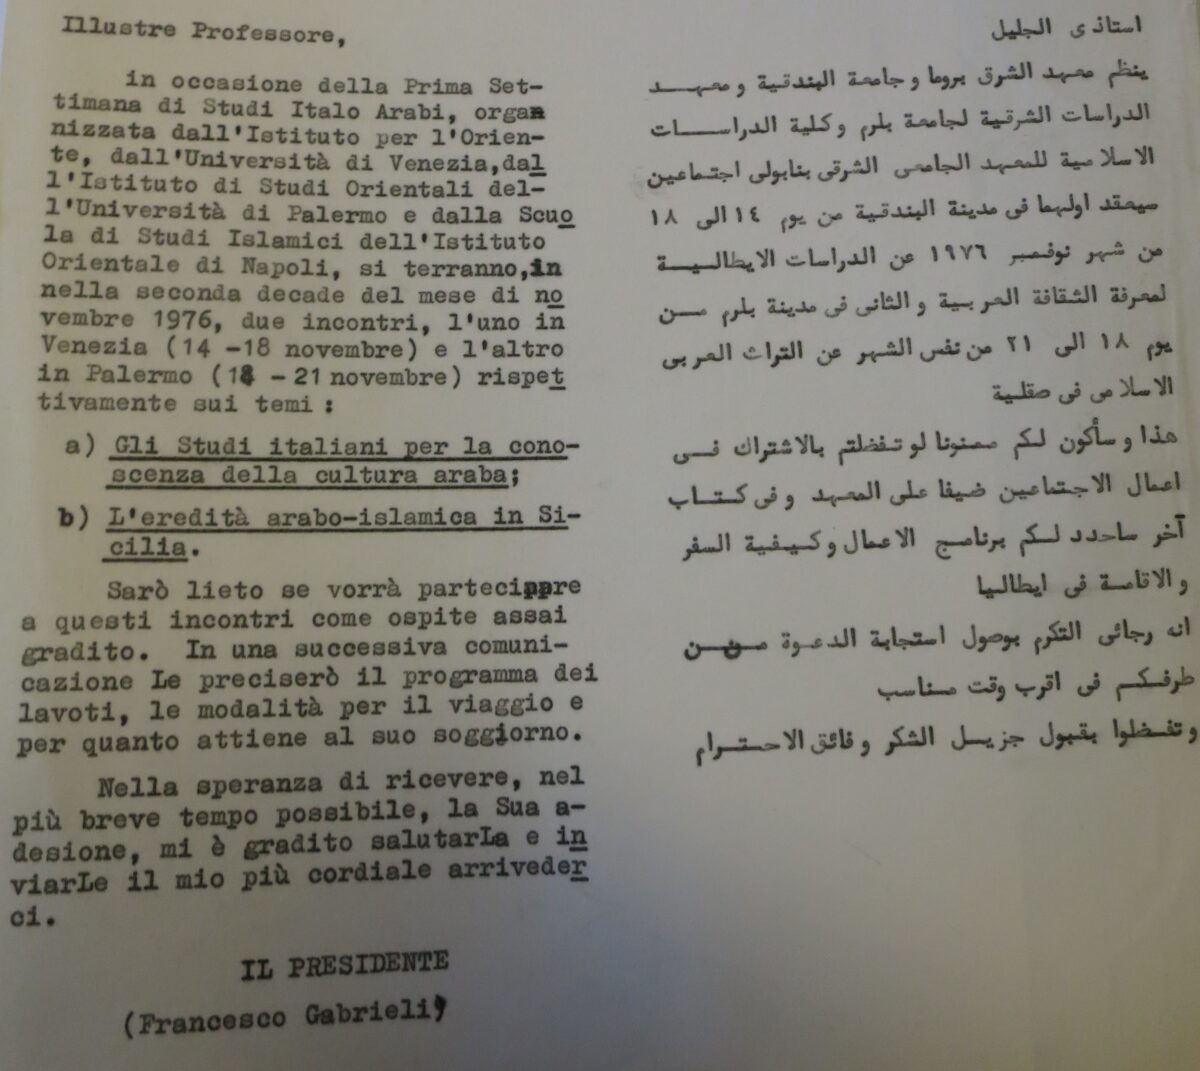 Das Bild zeigt ein zweisprachiges Dokument auf Arabisch und Italienisch. Der abgebildete Text handelt von einer Veranstaltung in Italien im Jahr 1976